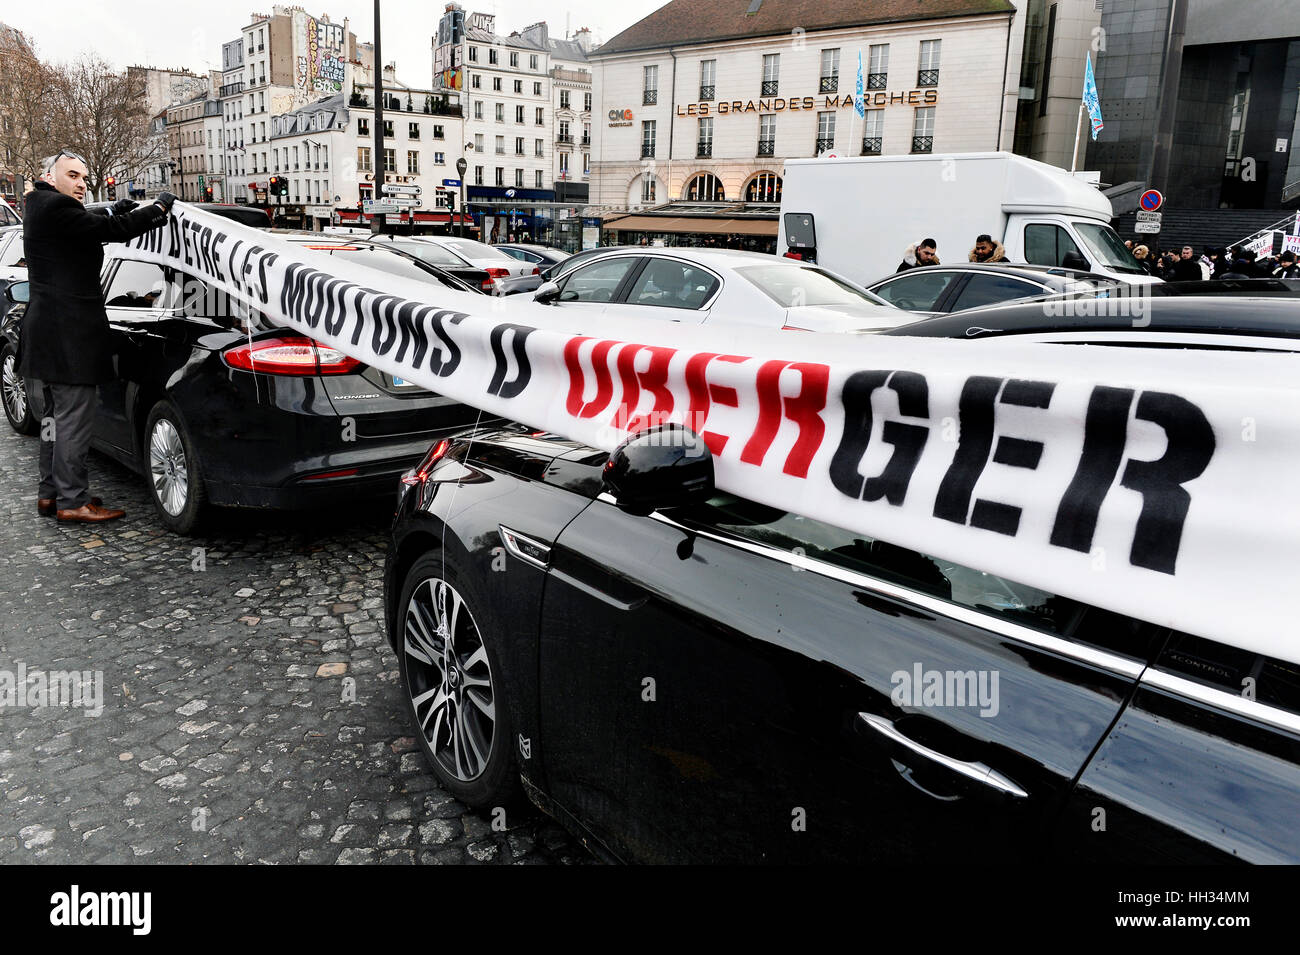 VTC Controladores Uber protesta en París, 16 de enero de 2017, la Place de la Bastille, París Foto de stock